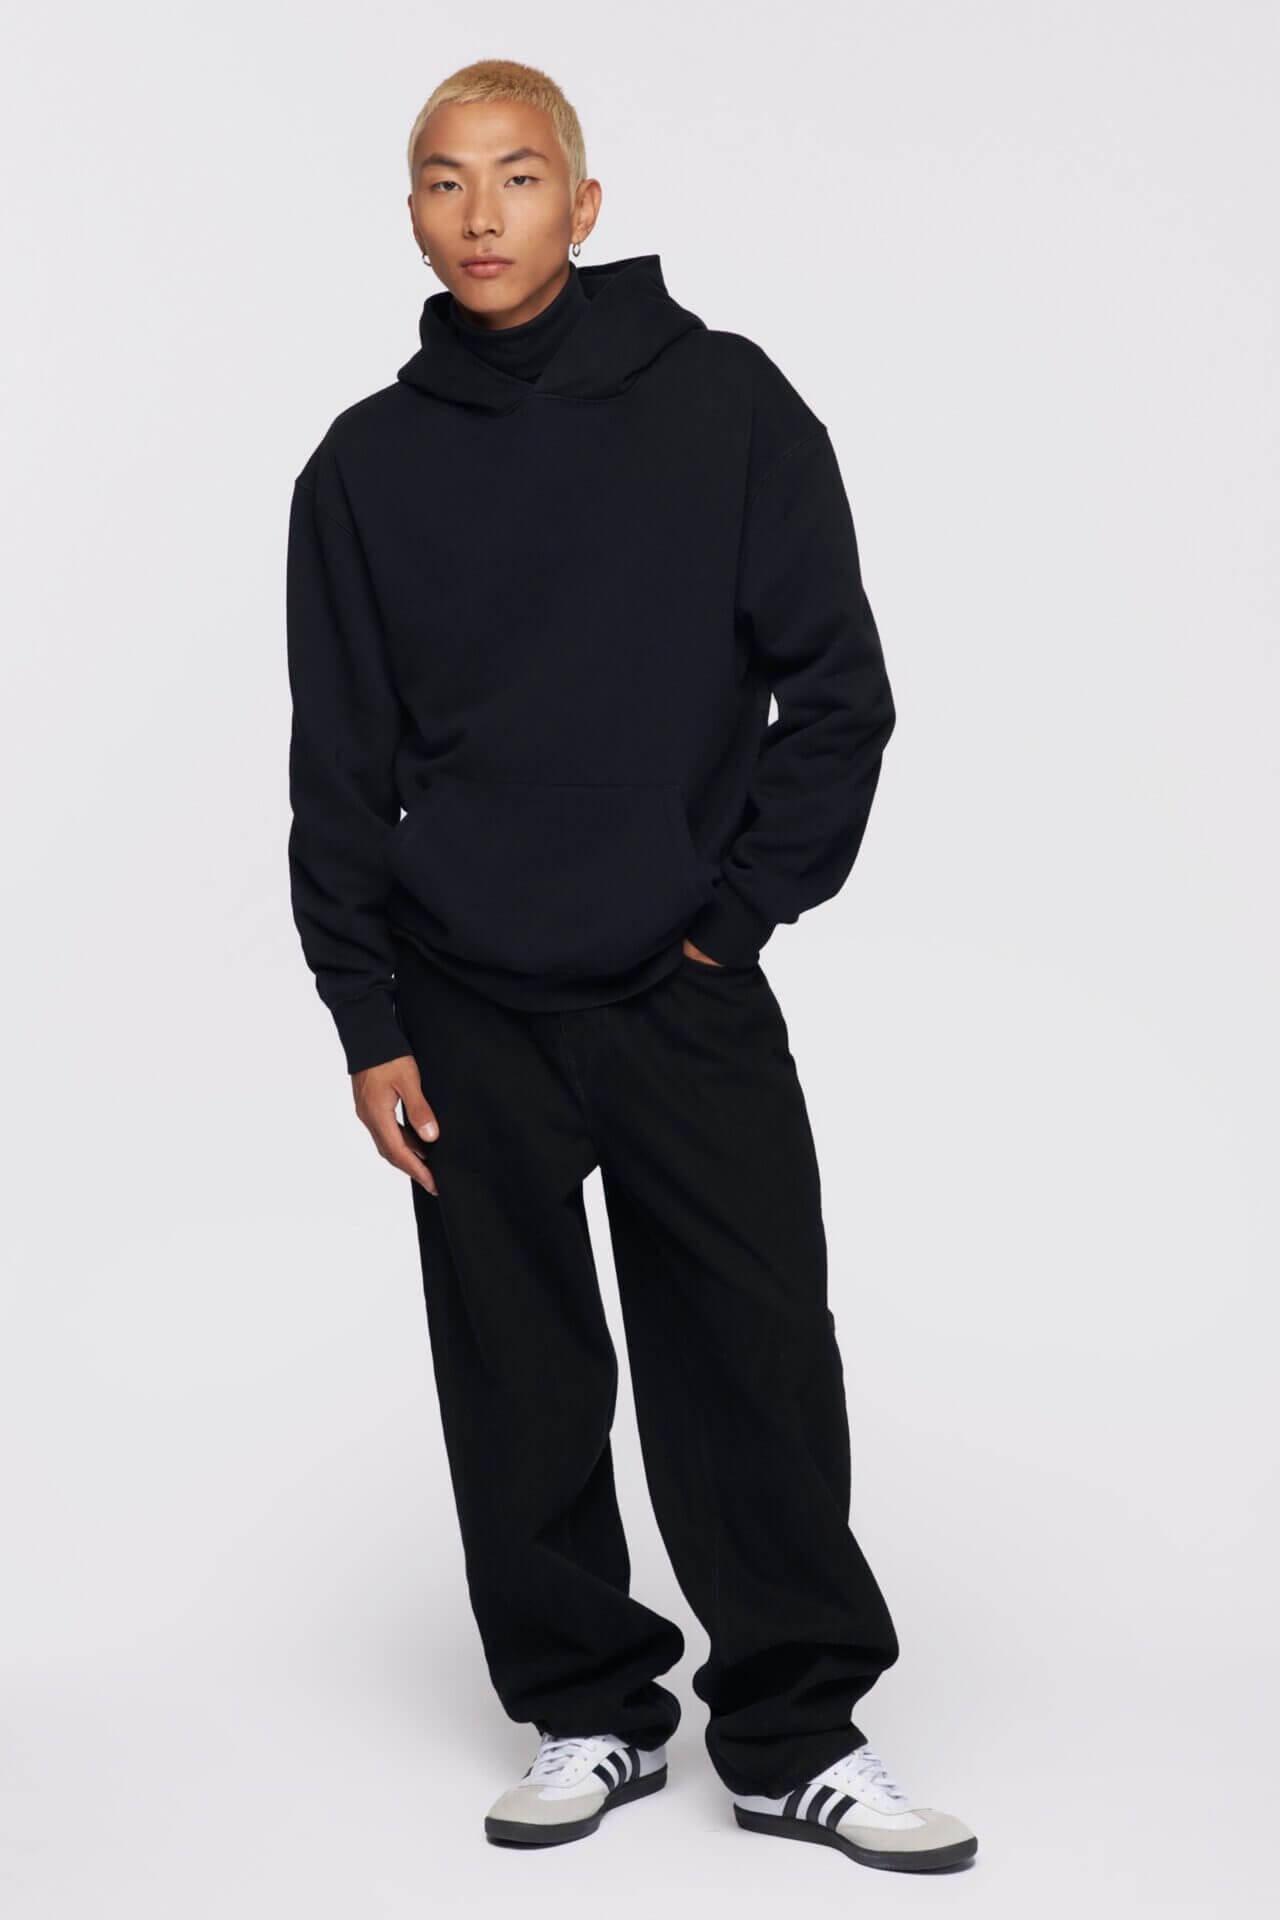 Kotn Unisex Essential Hoodie in Black | Eco-Stylist